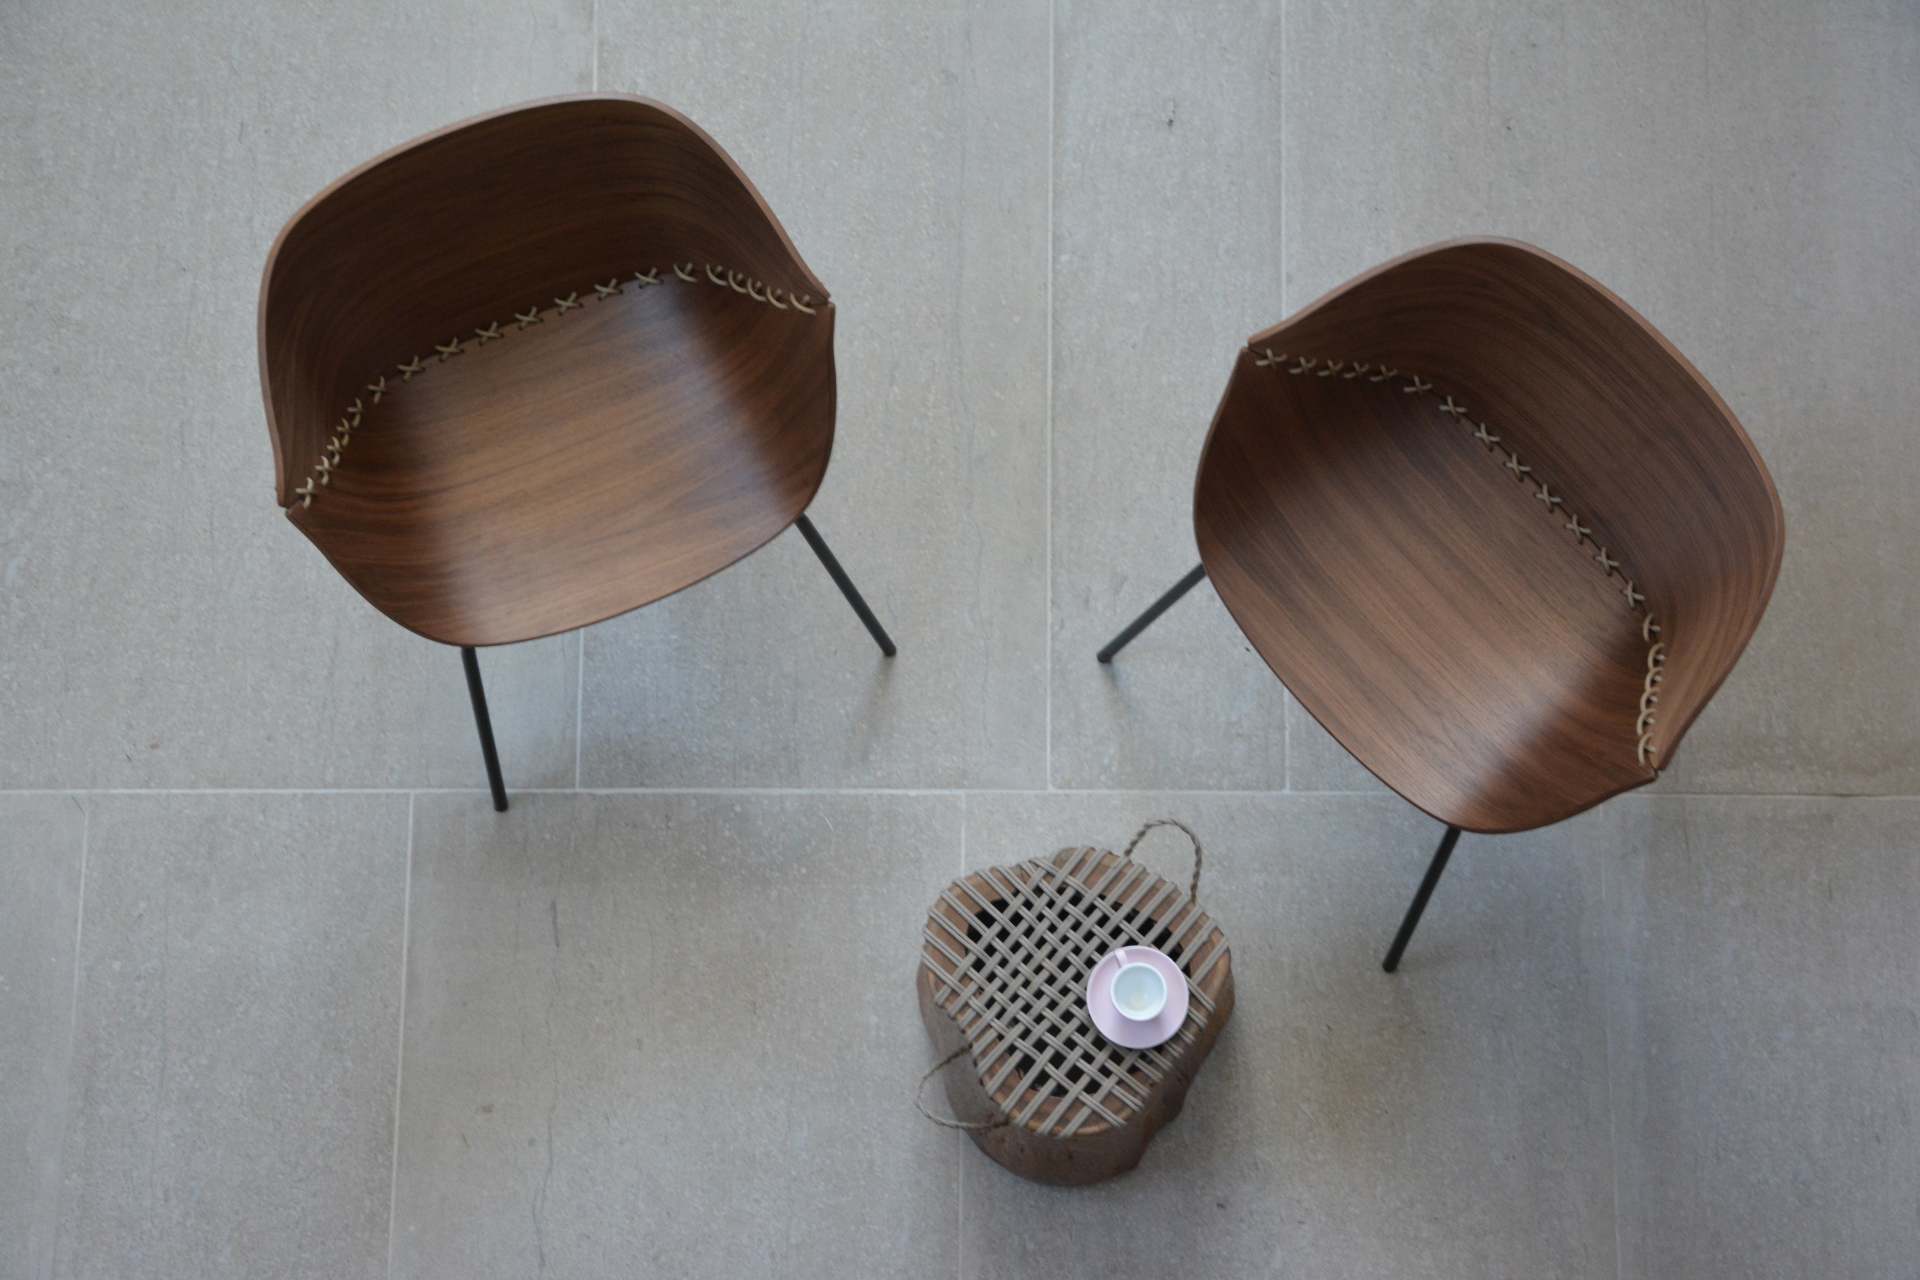 Der Stuhl Gossip überzeugt mit seinem besonderen Design. Das Gestell ist aus Metall und die Sitzschale aus Eichenfurnier in einer Nussbaum Optik.